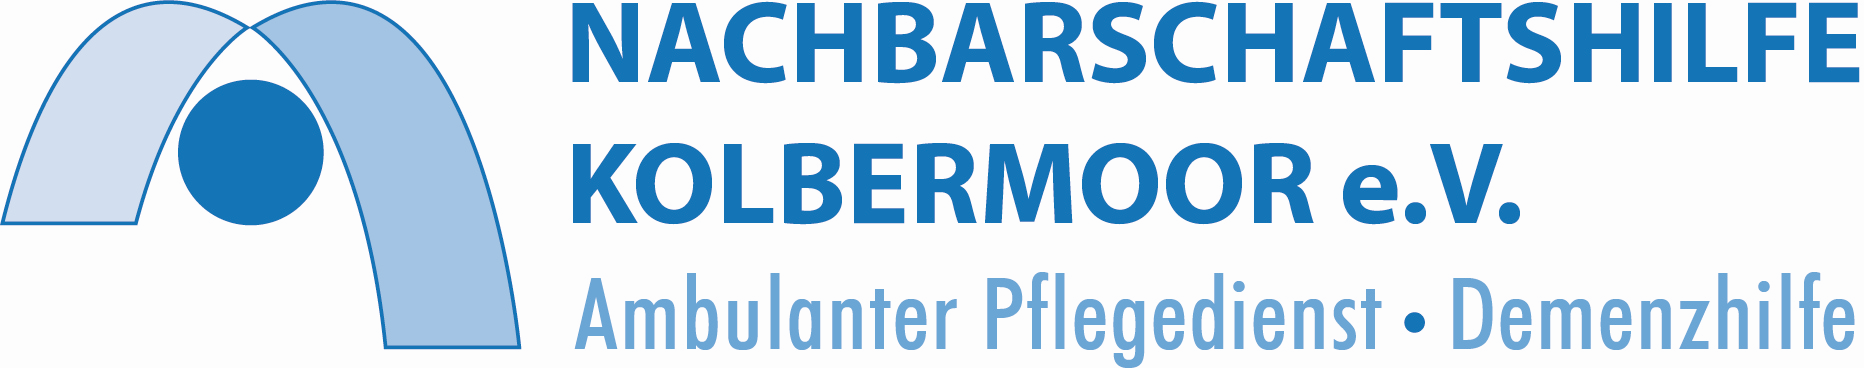 Logo: Nachbarschaftshilfe Kolbermoor e. V. ambulanter Pflegedienst